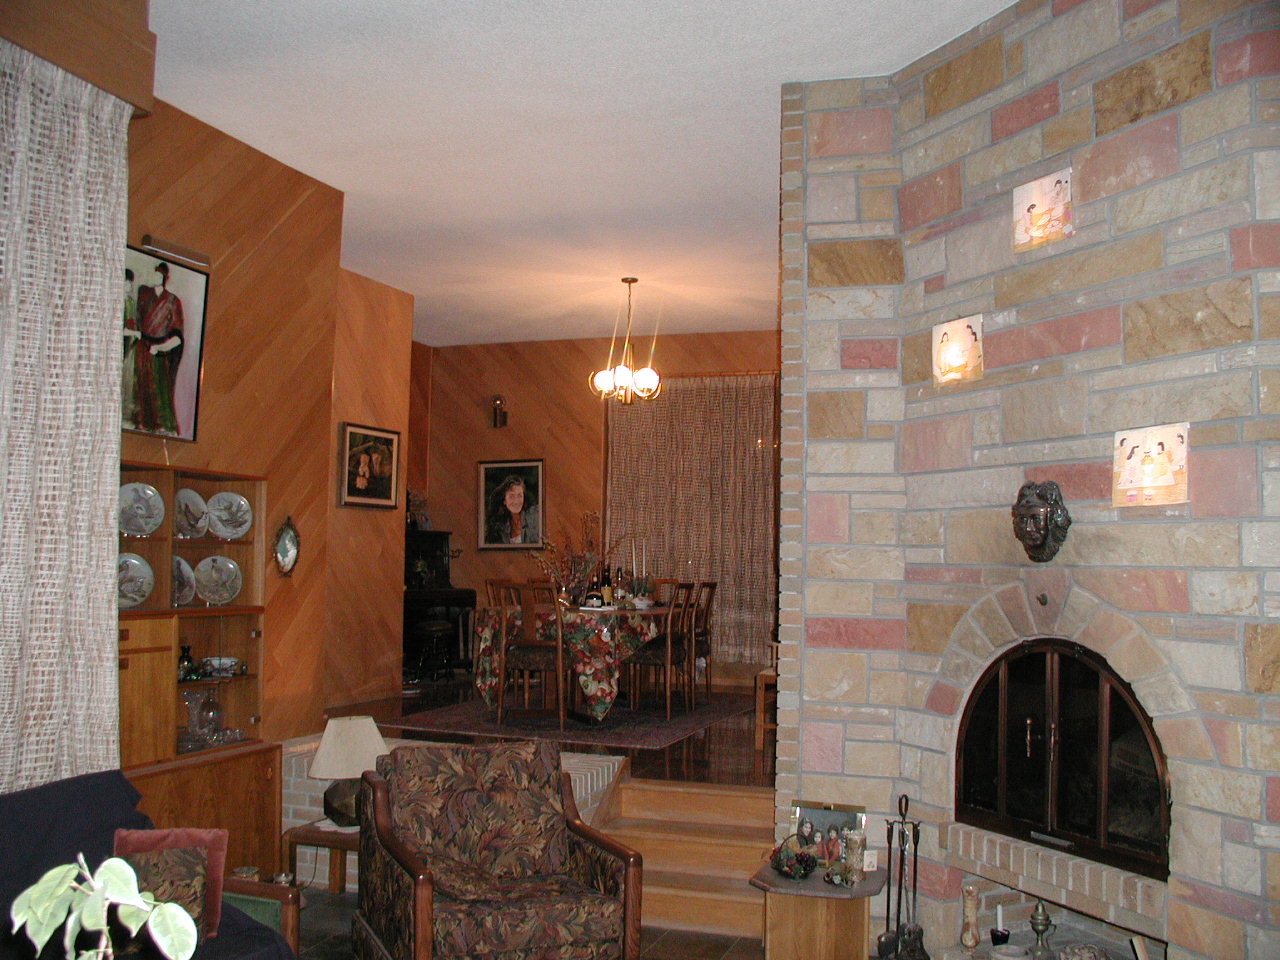 Interior - Dining room